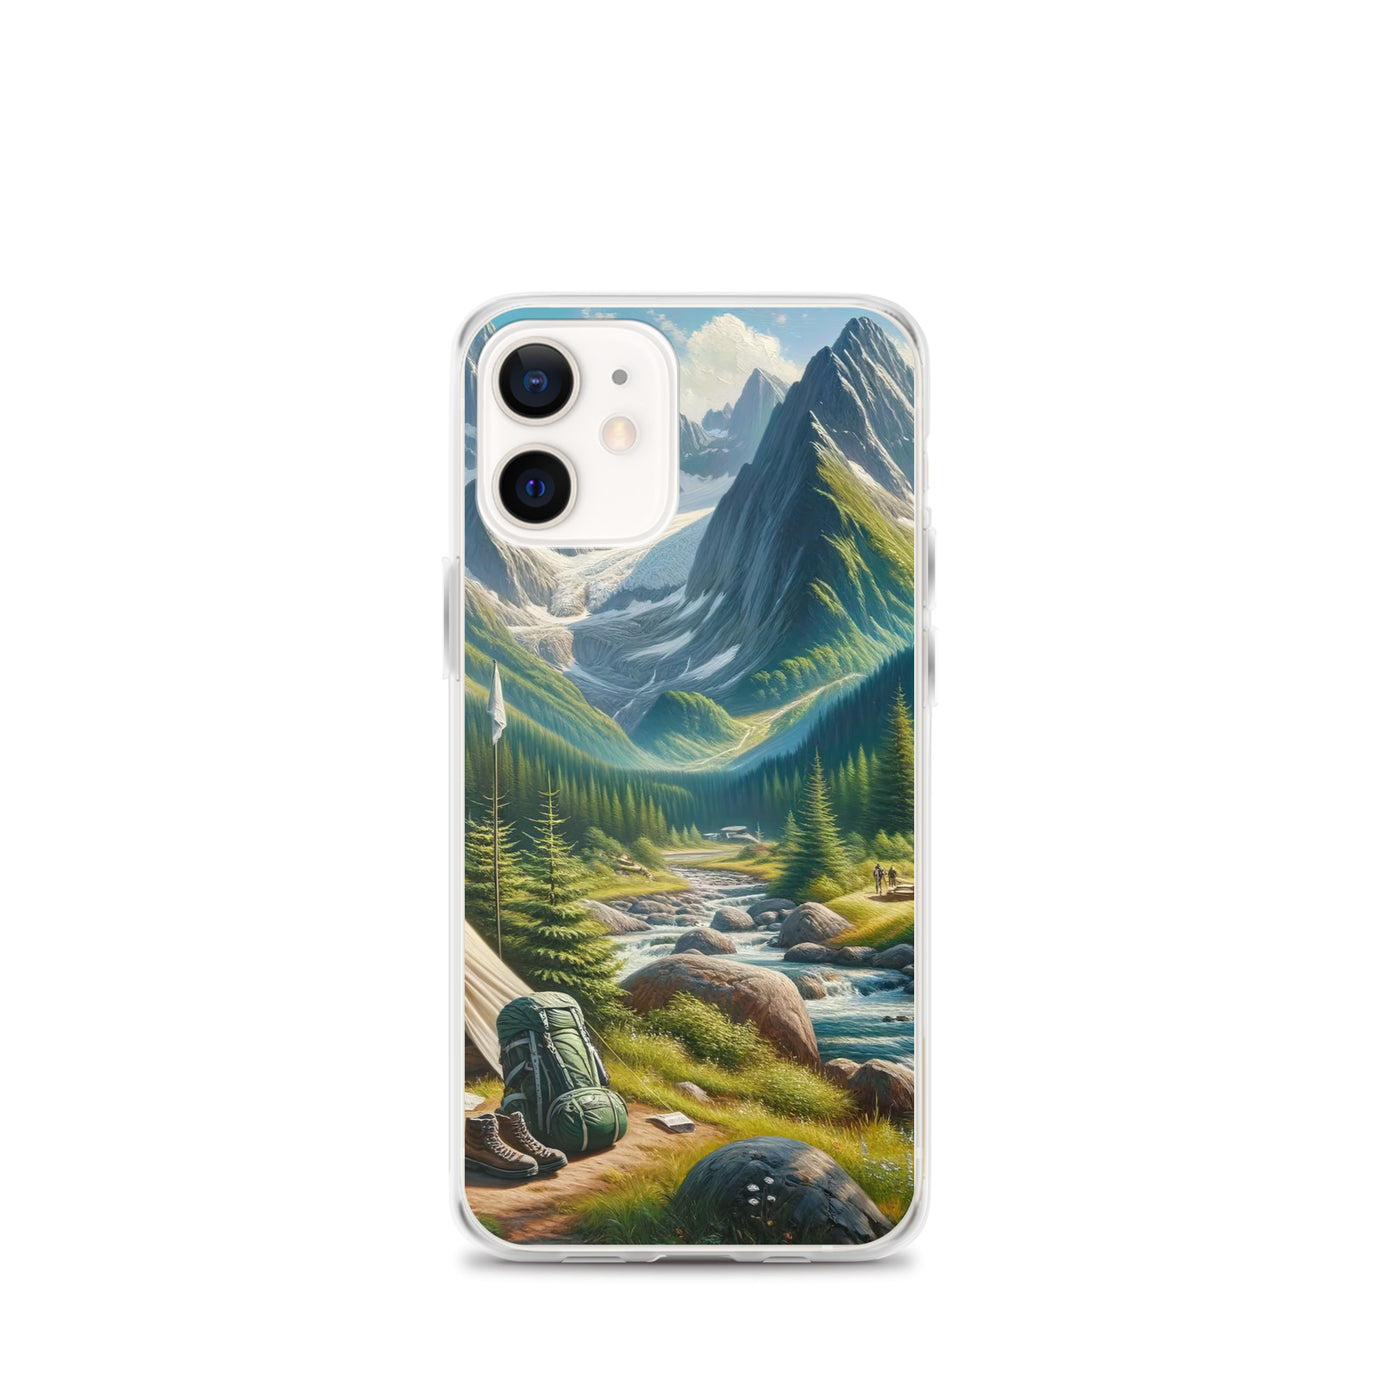 Ölgemälde der Alpensommerlandschaft mit Zelt, Gipfeln, Wäldern und Bächen - iPhone Schutzhülle (durchsichtig) camping xxx yyy zzz iPhone 12 mini